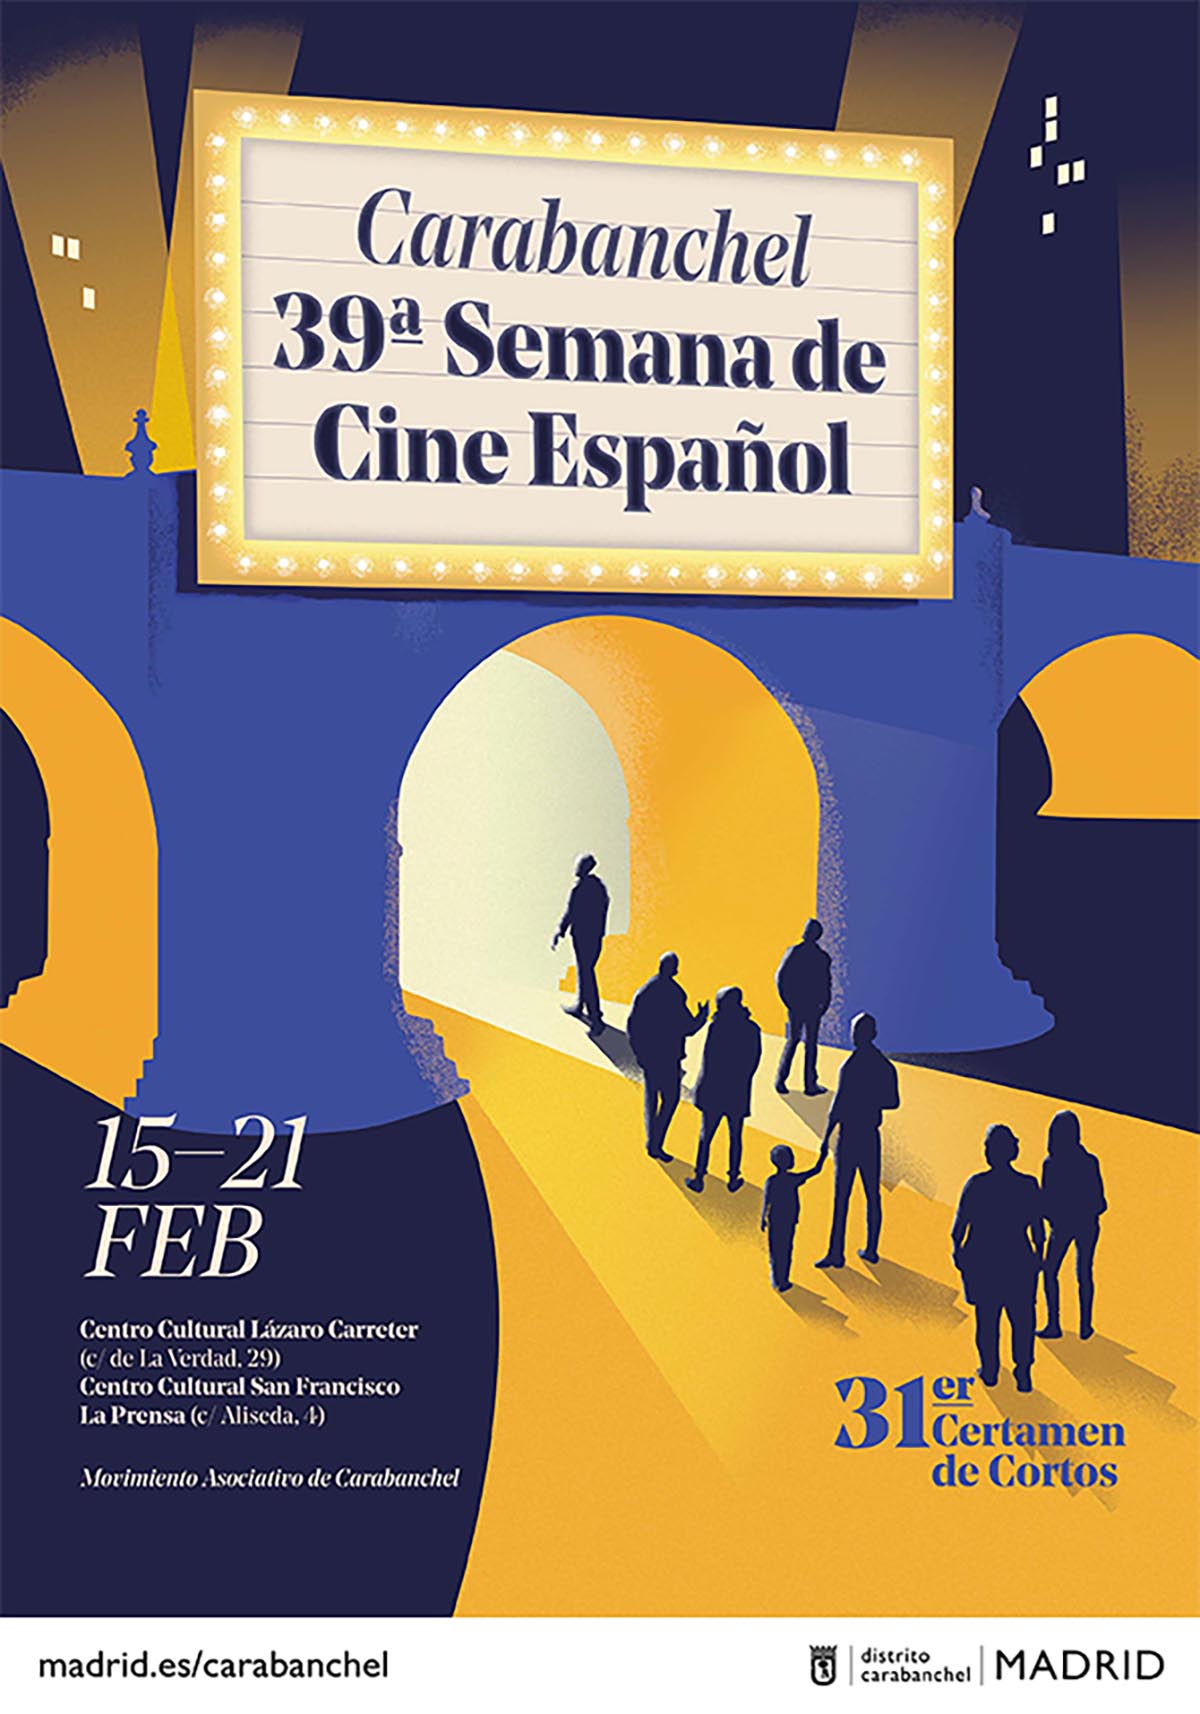 Del 15 al 21 de febrero se celebra la 39 Semana de Cine Español de Carabanchel